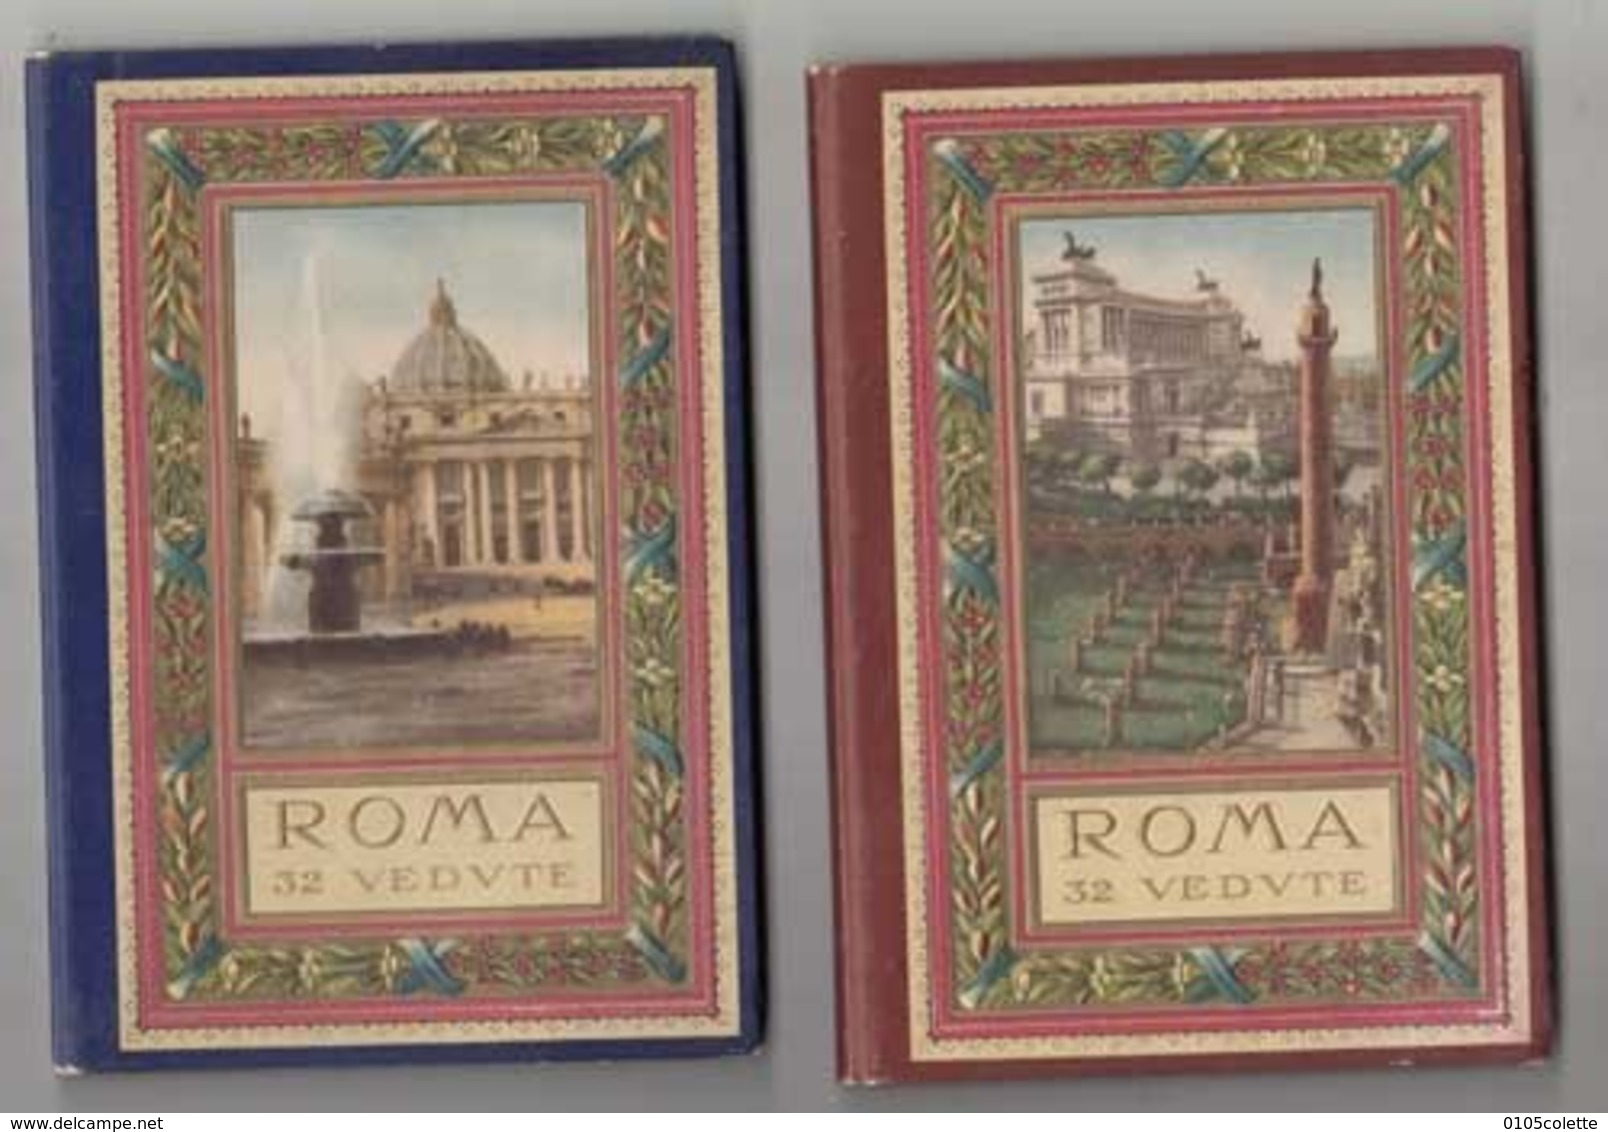 CPA Italie - Rome - 2 Trés Beaux Carnets De Rome De 32 Vedvte (64 Photos )    - Achat Immédiat  (cd 004) - Sammlungen & Lose